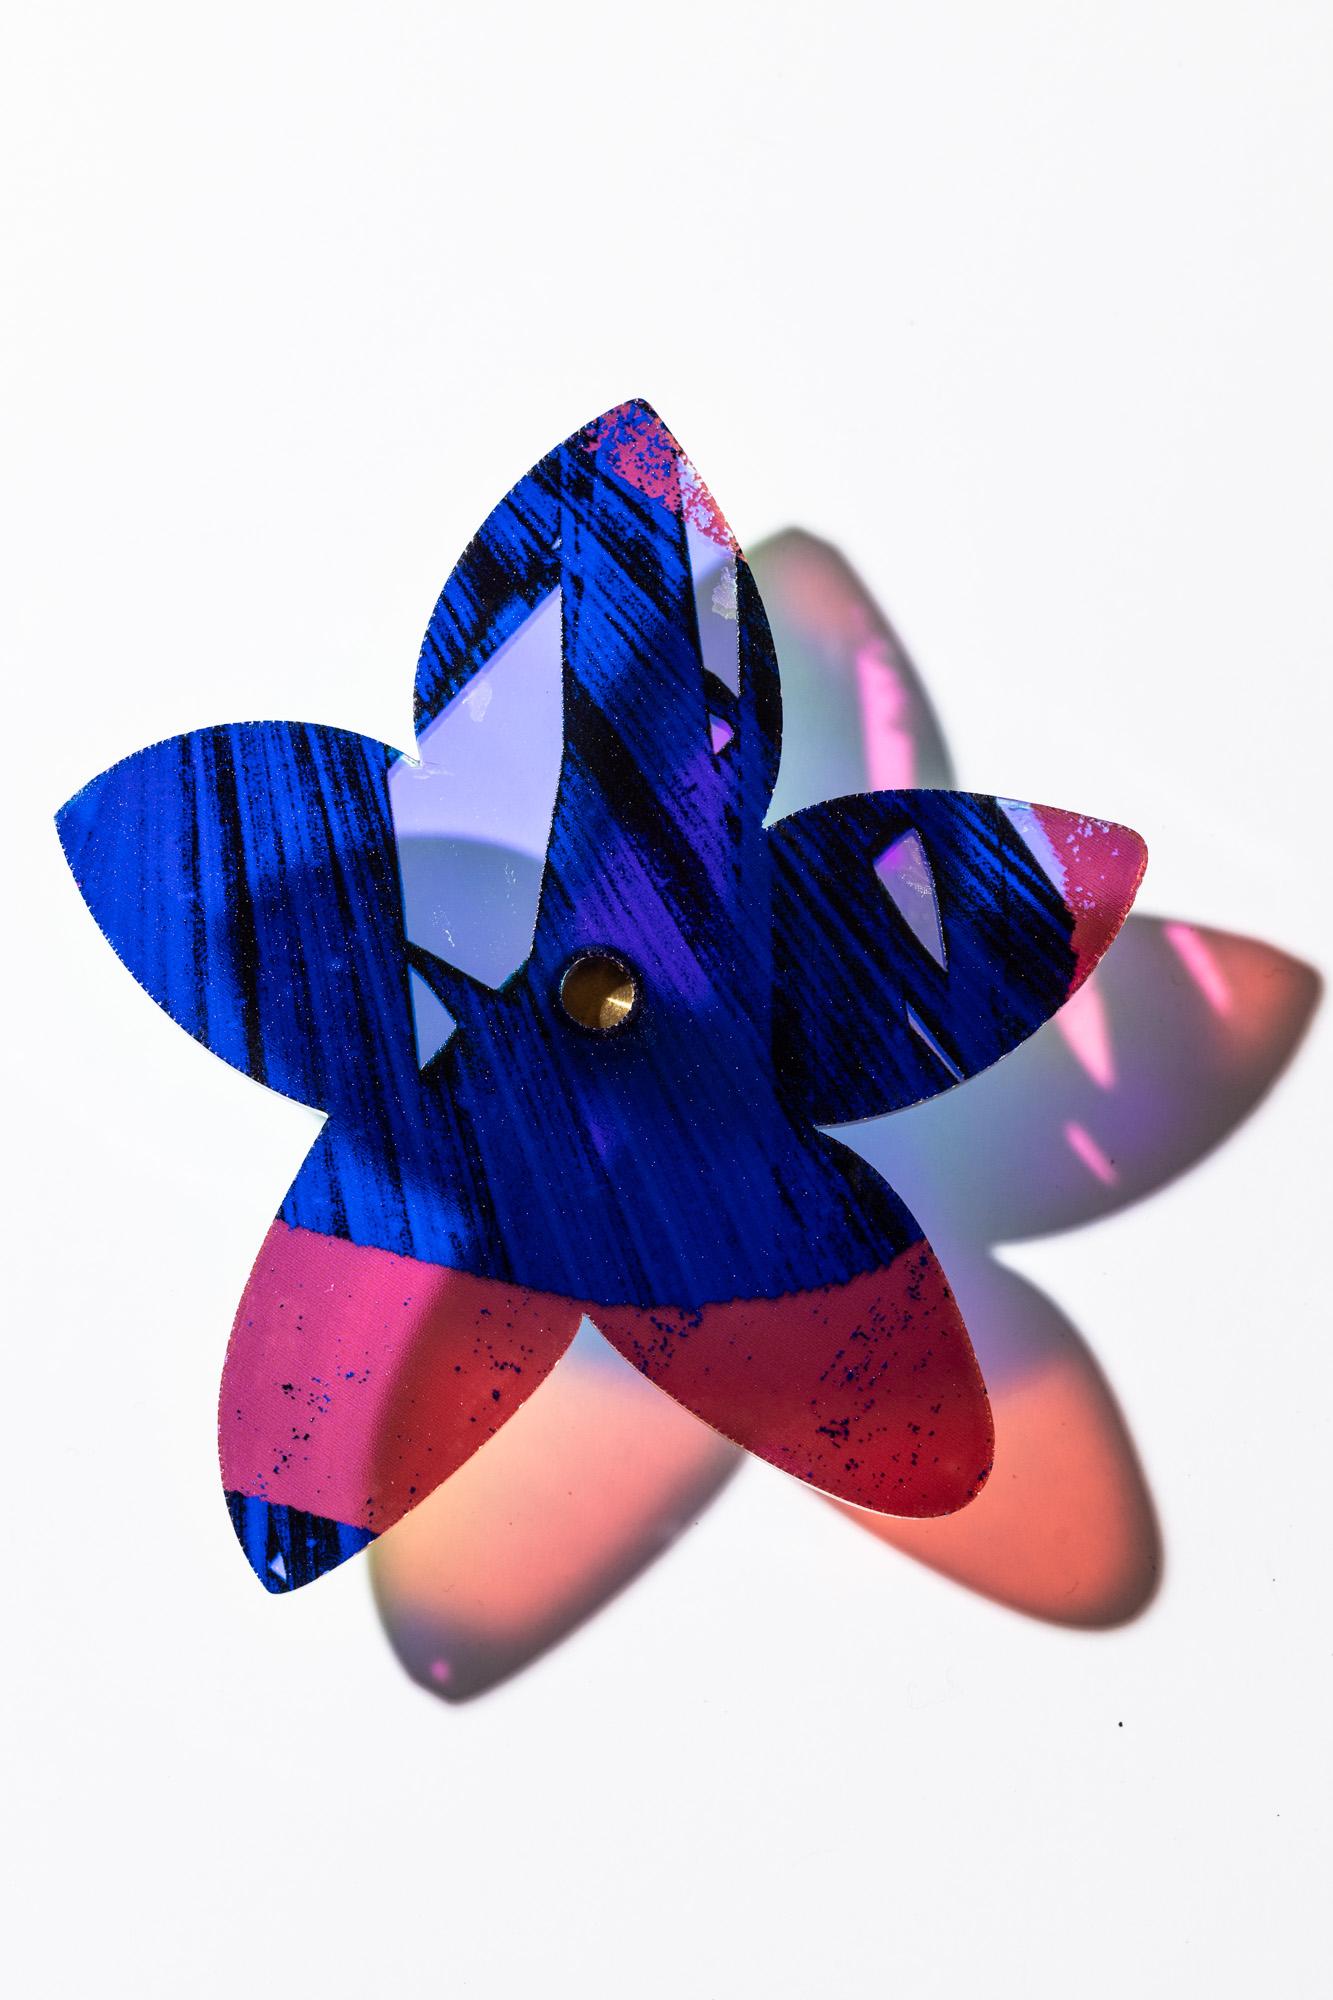 Starflower Series 3 - Sculpture by Roxana Azar